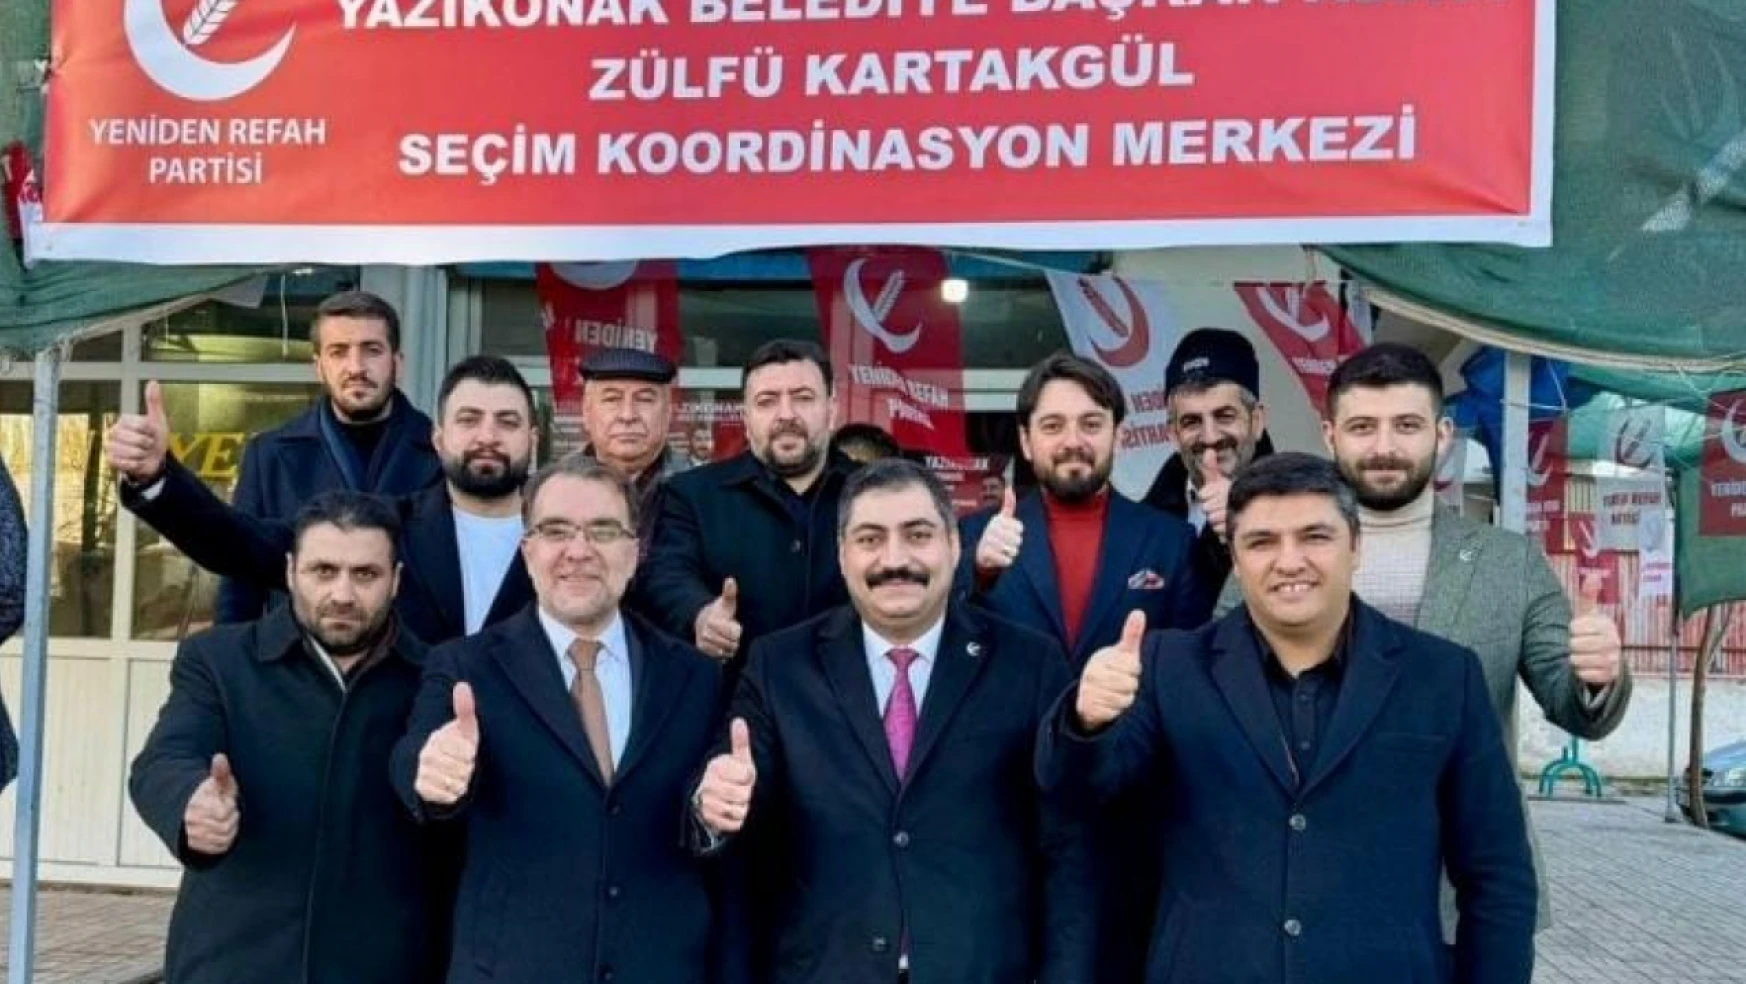 YRP Yazıkonak belediye başkan adayı Kartakgül'ün seçim çalışmaları